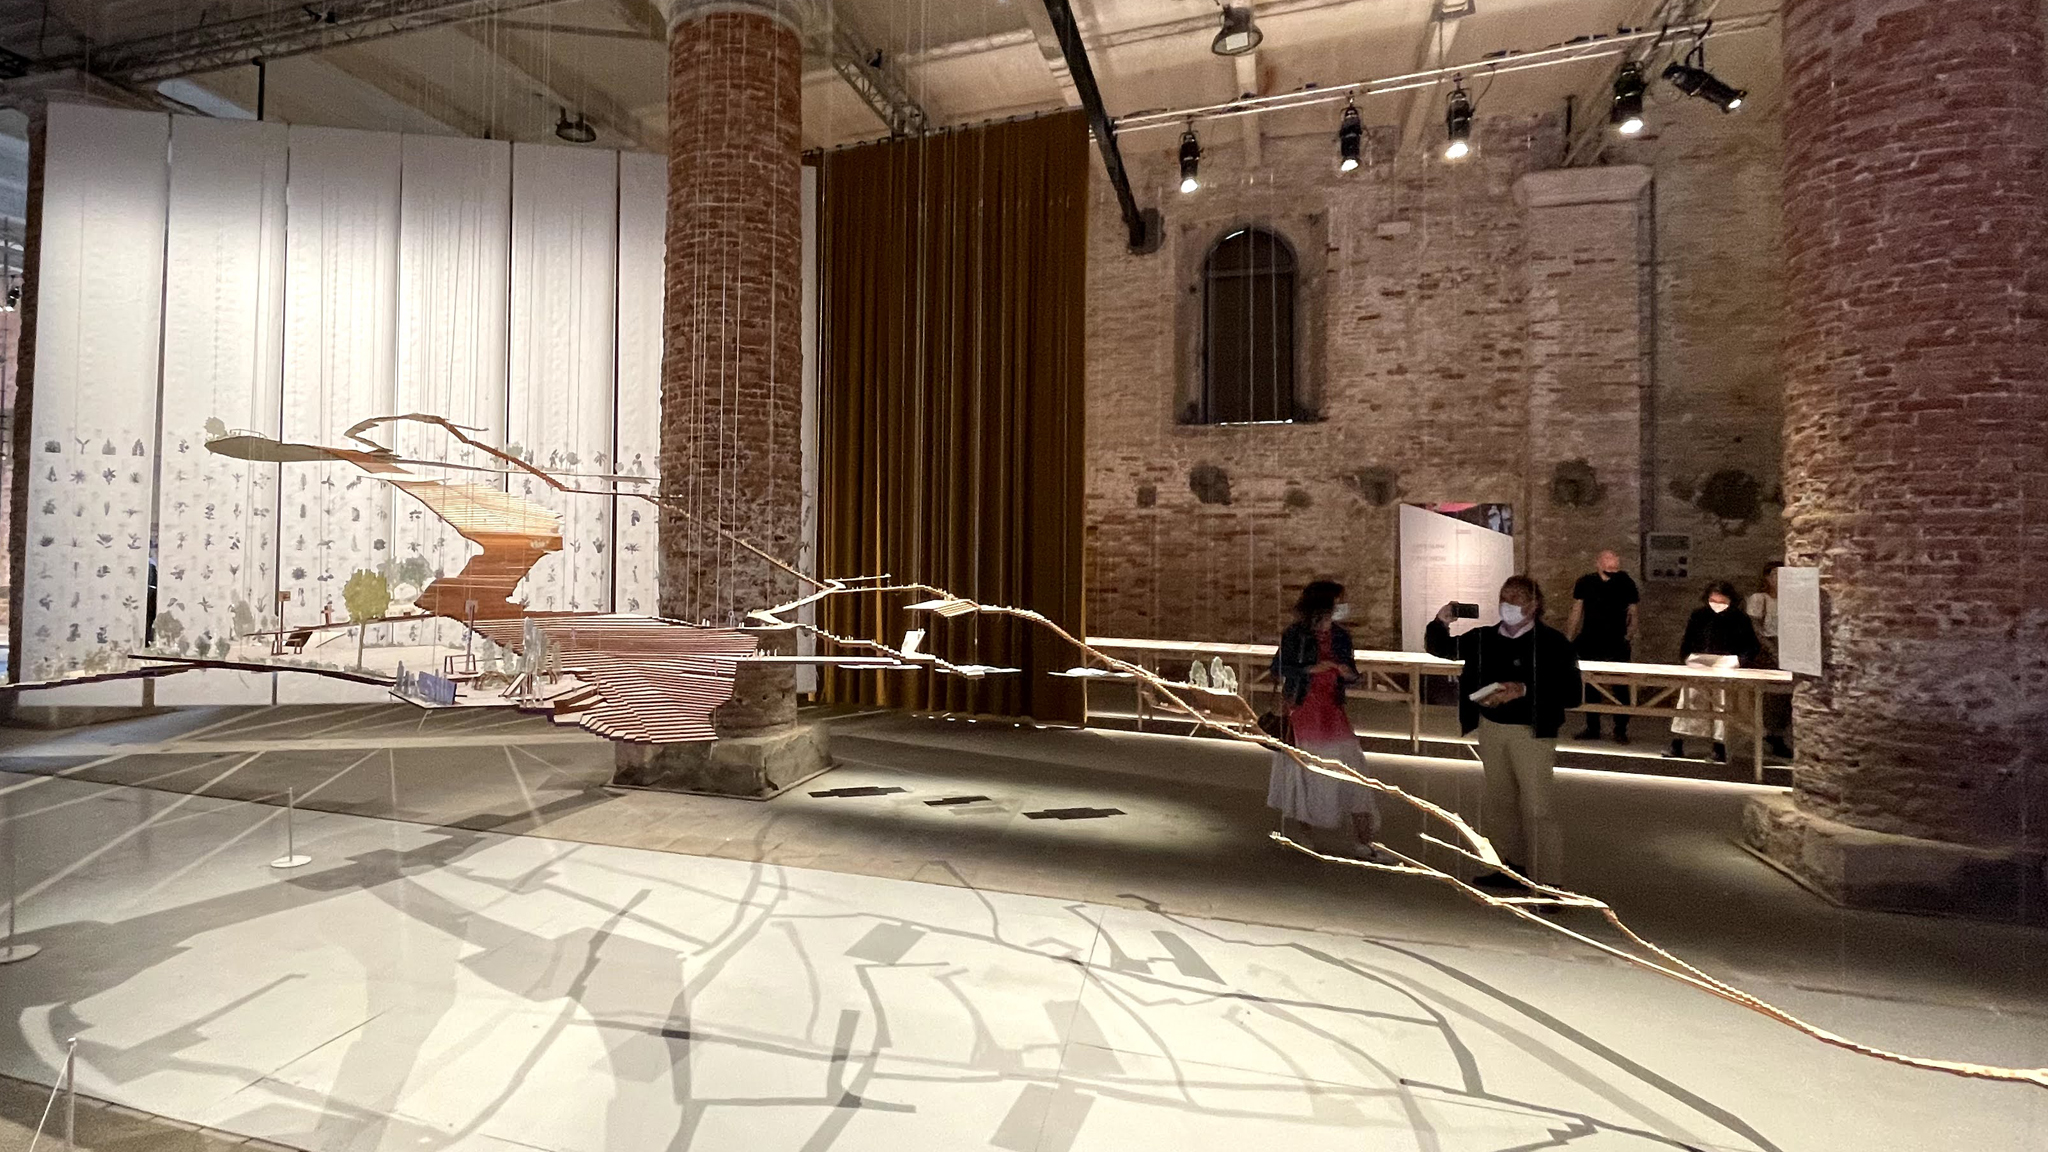 Biennale di Venezia 2021